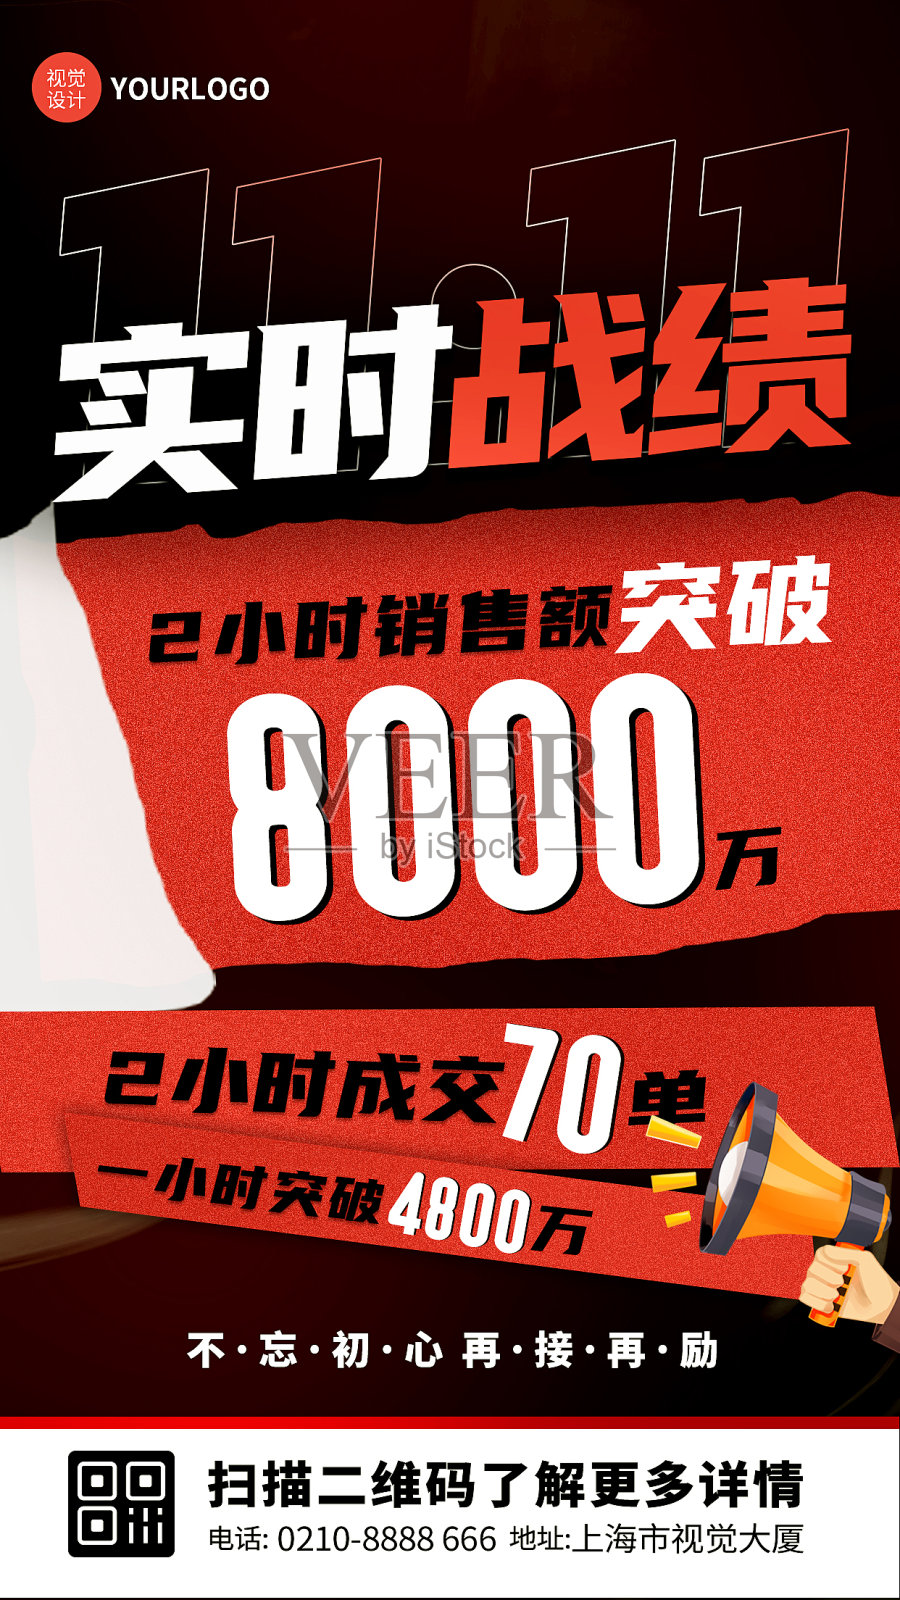 双11销售业绩红色炫酷风手机海报设计模板素材